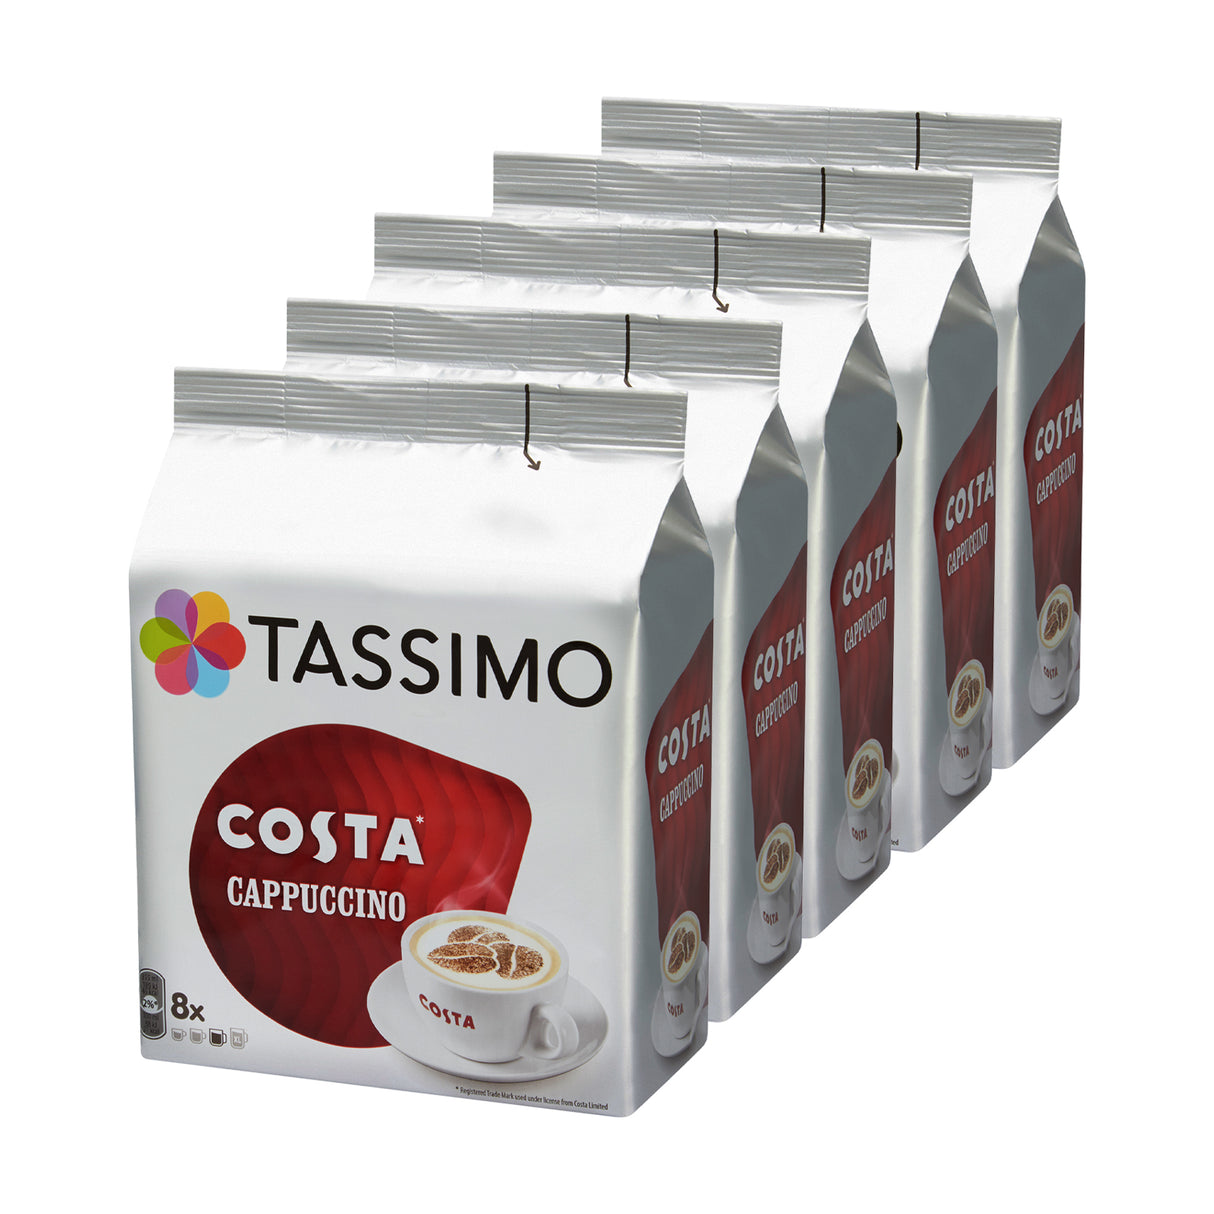 Tassimo Costa Cappuccino 5 pack